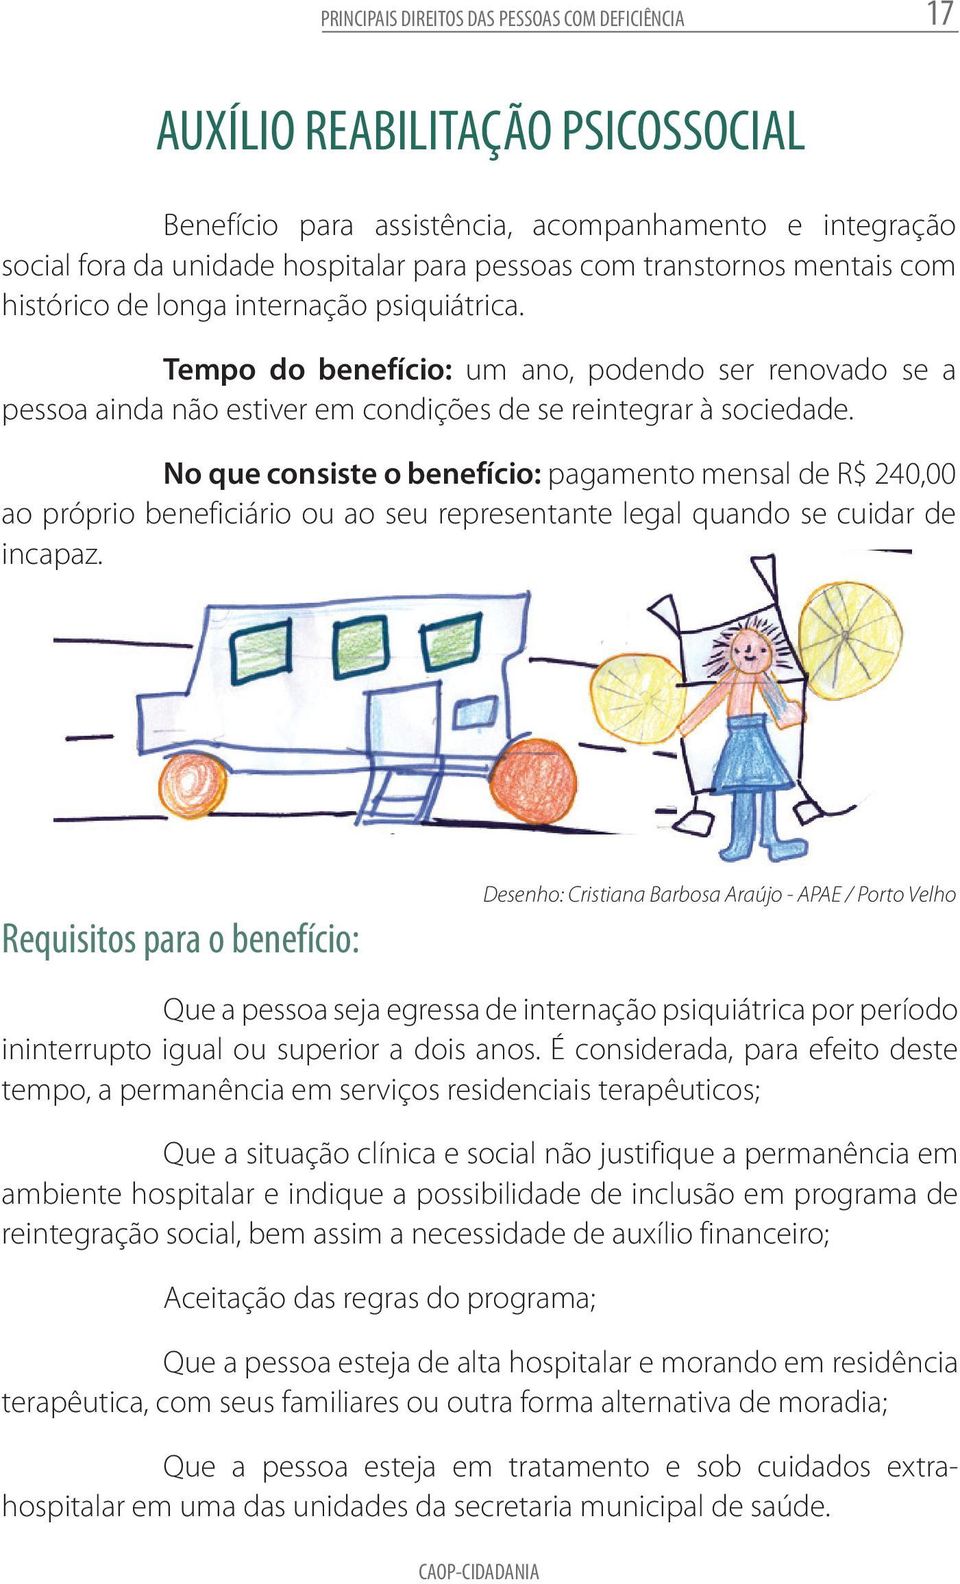 Desenho: Cristiana Barbosa Araújo - APAE / Porto Velho enefício Tempo para do benefício: assistência, um ano, podendo ser renovado se a pessoa acompanhamento ainda não estiver e em integração